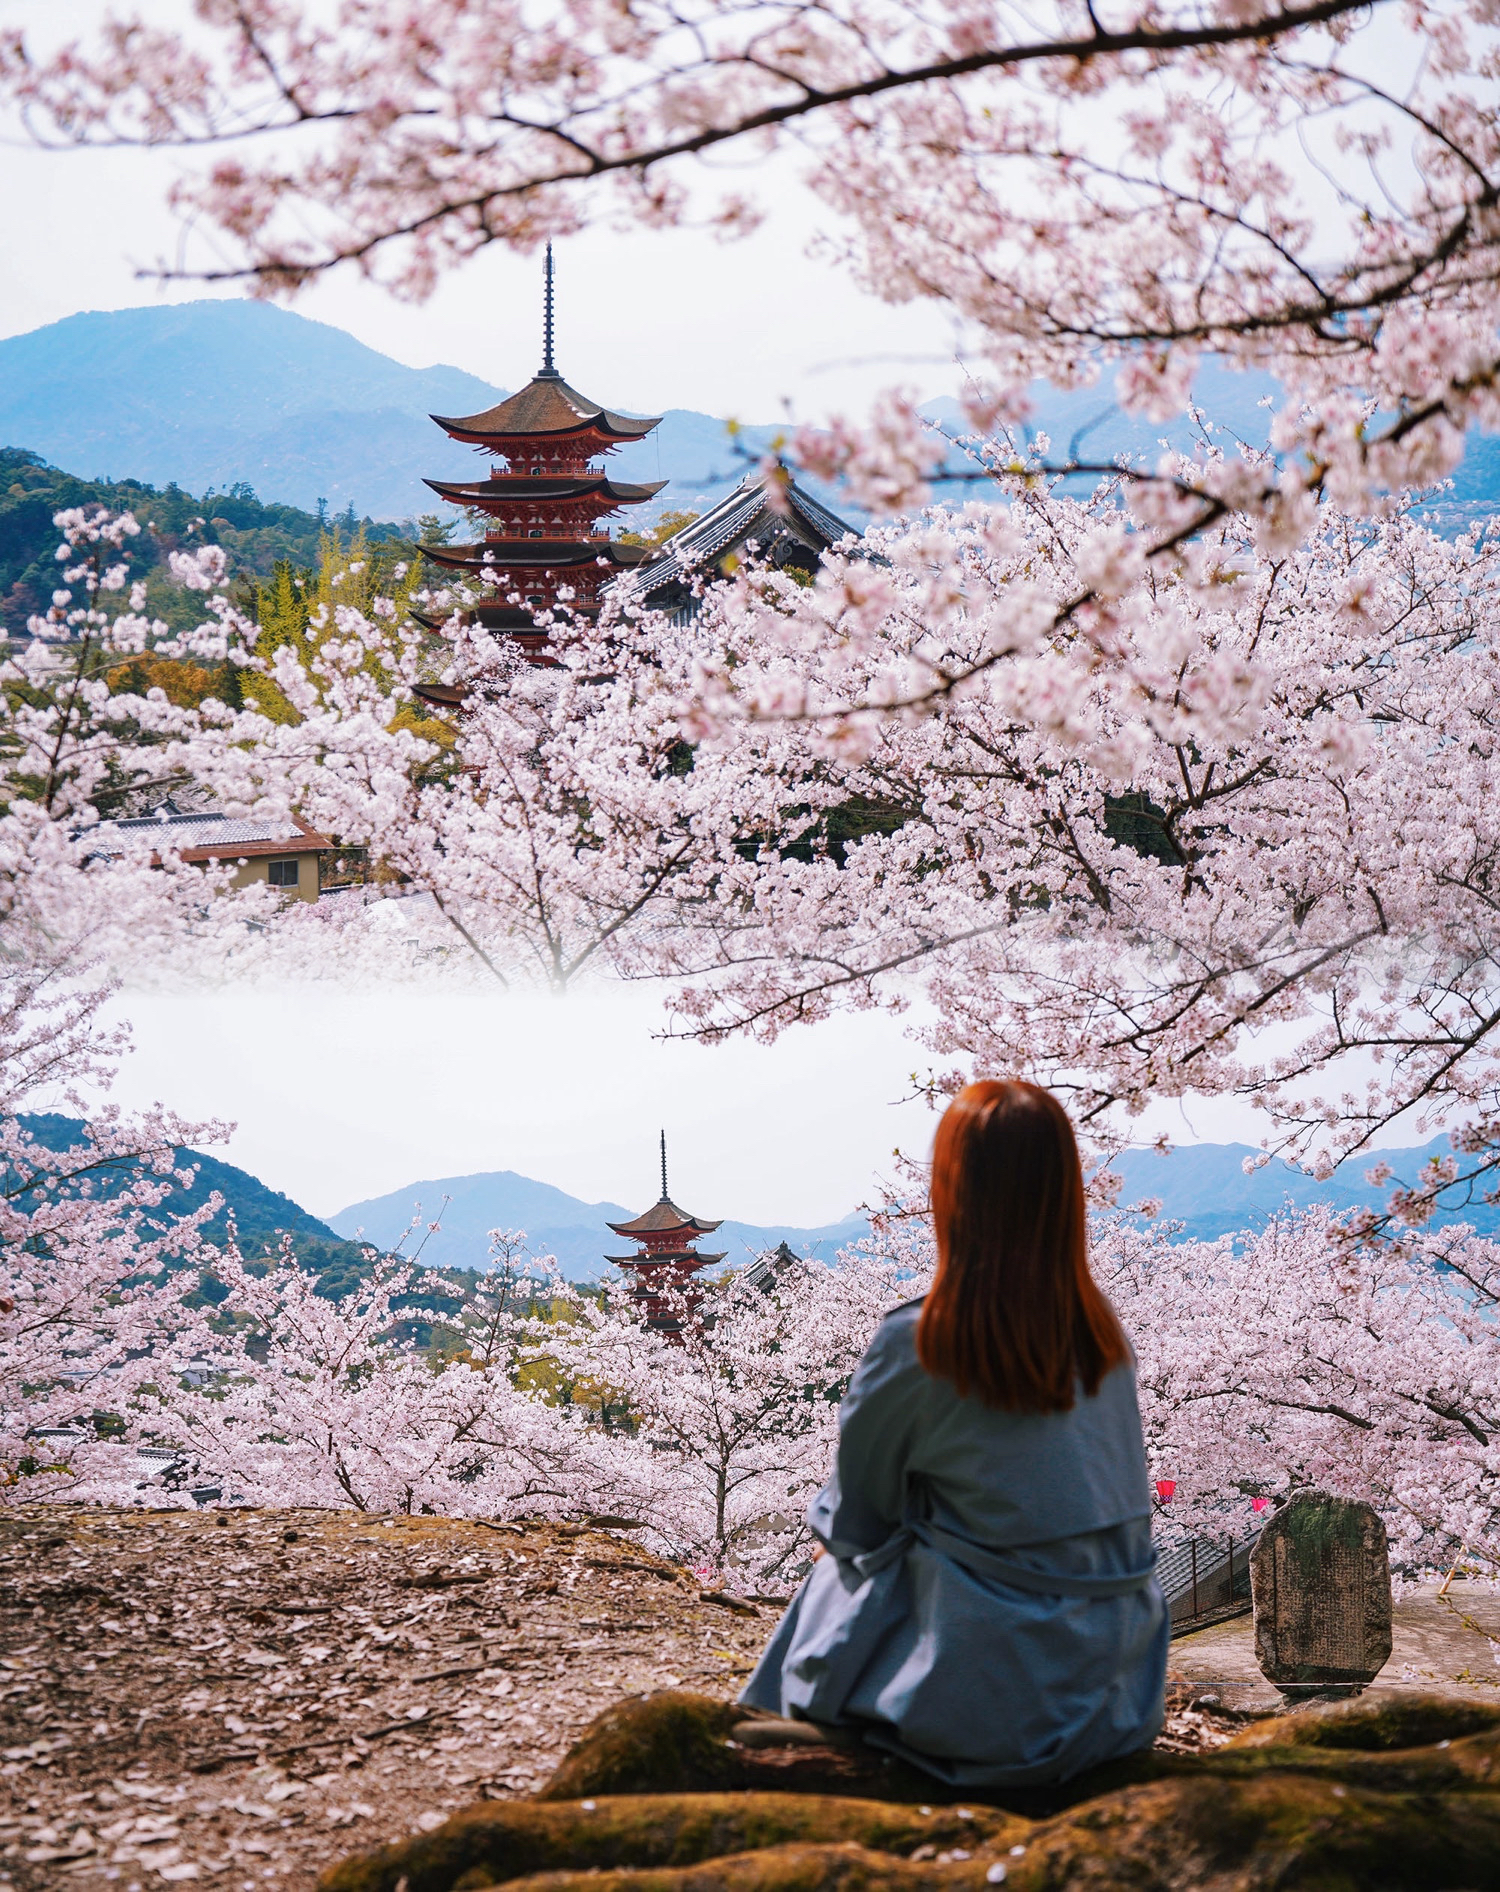 我在广岛拍到了ins同款樱花人生照片🌸